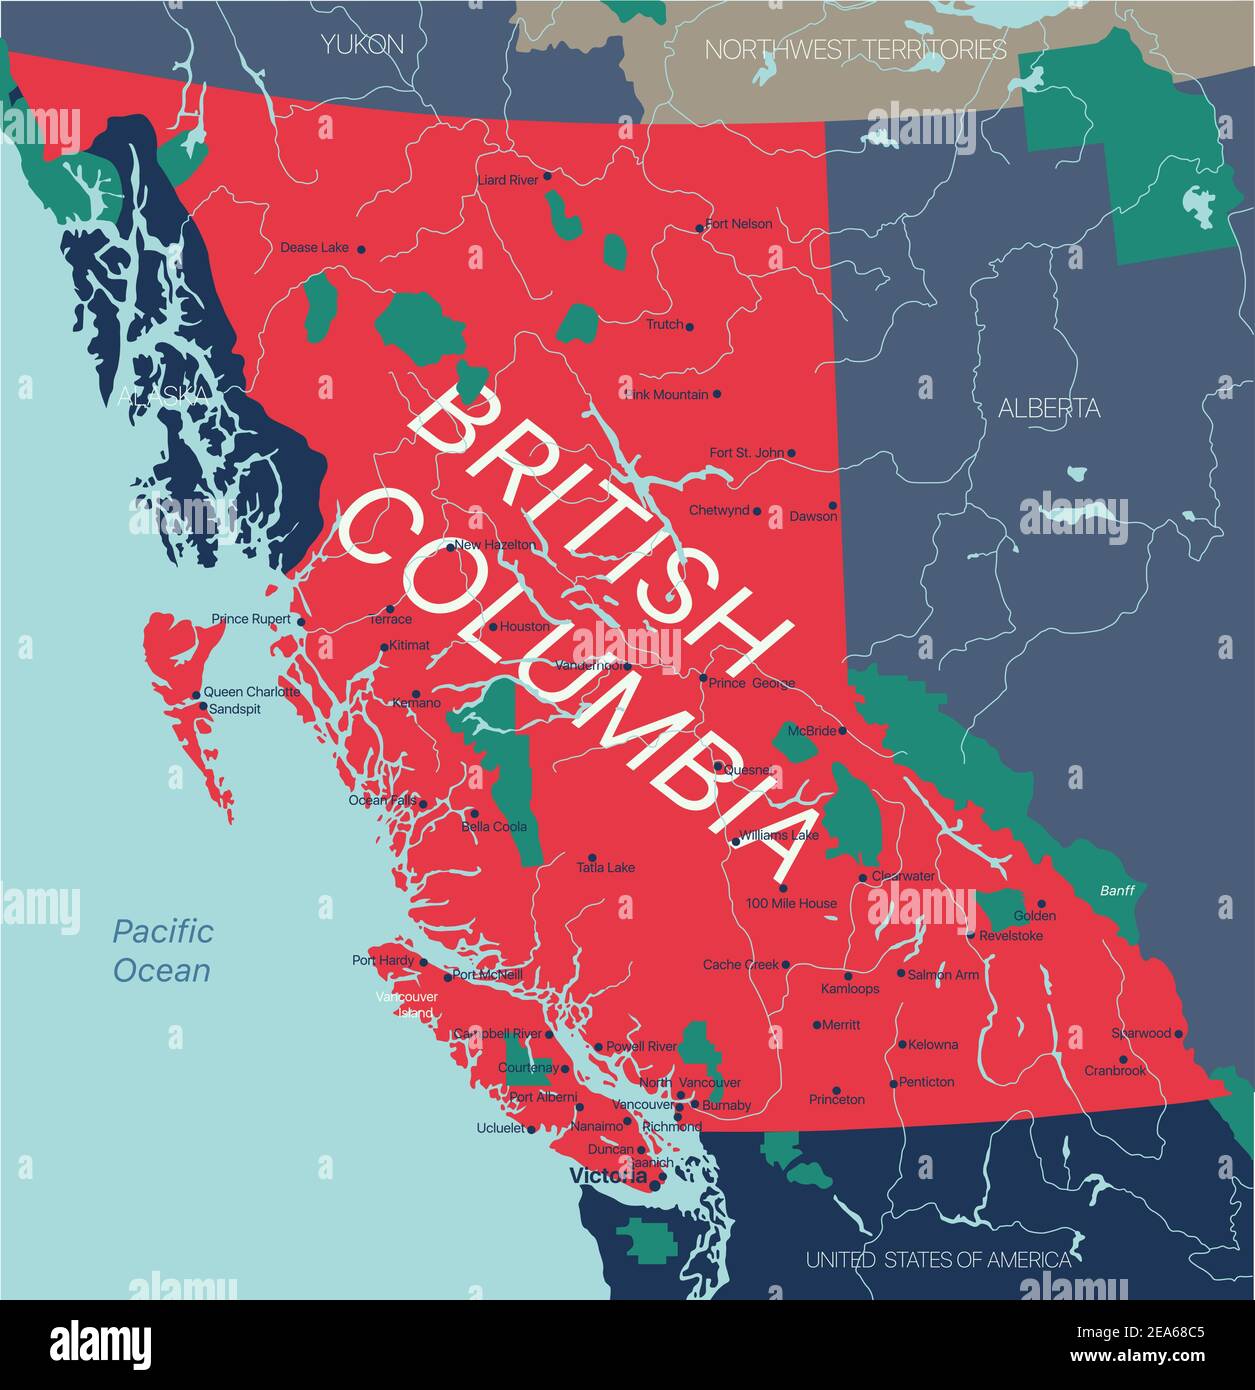 Province de la Colombie-Britannique carte vectorielle modifiable du Canada avec la capitale, les frontières nationales, les villes, les rivières et les lacs. Fichier vectoriel EPS-10 Illustration de Vecteur